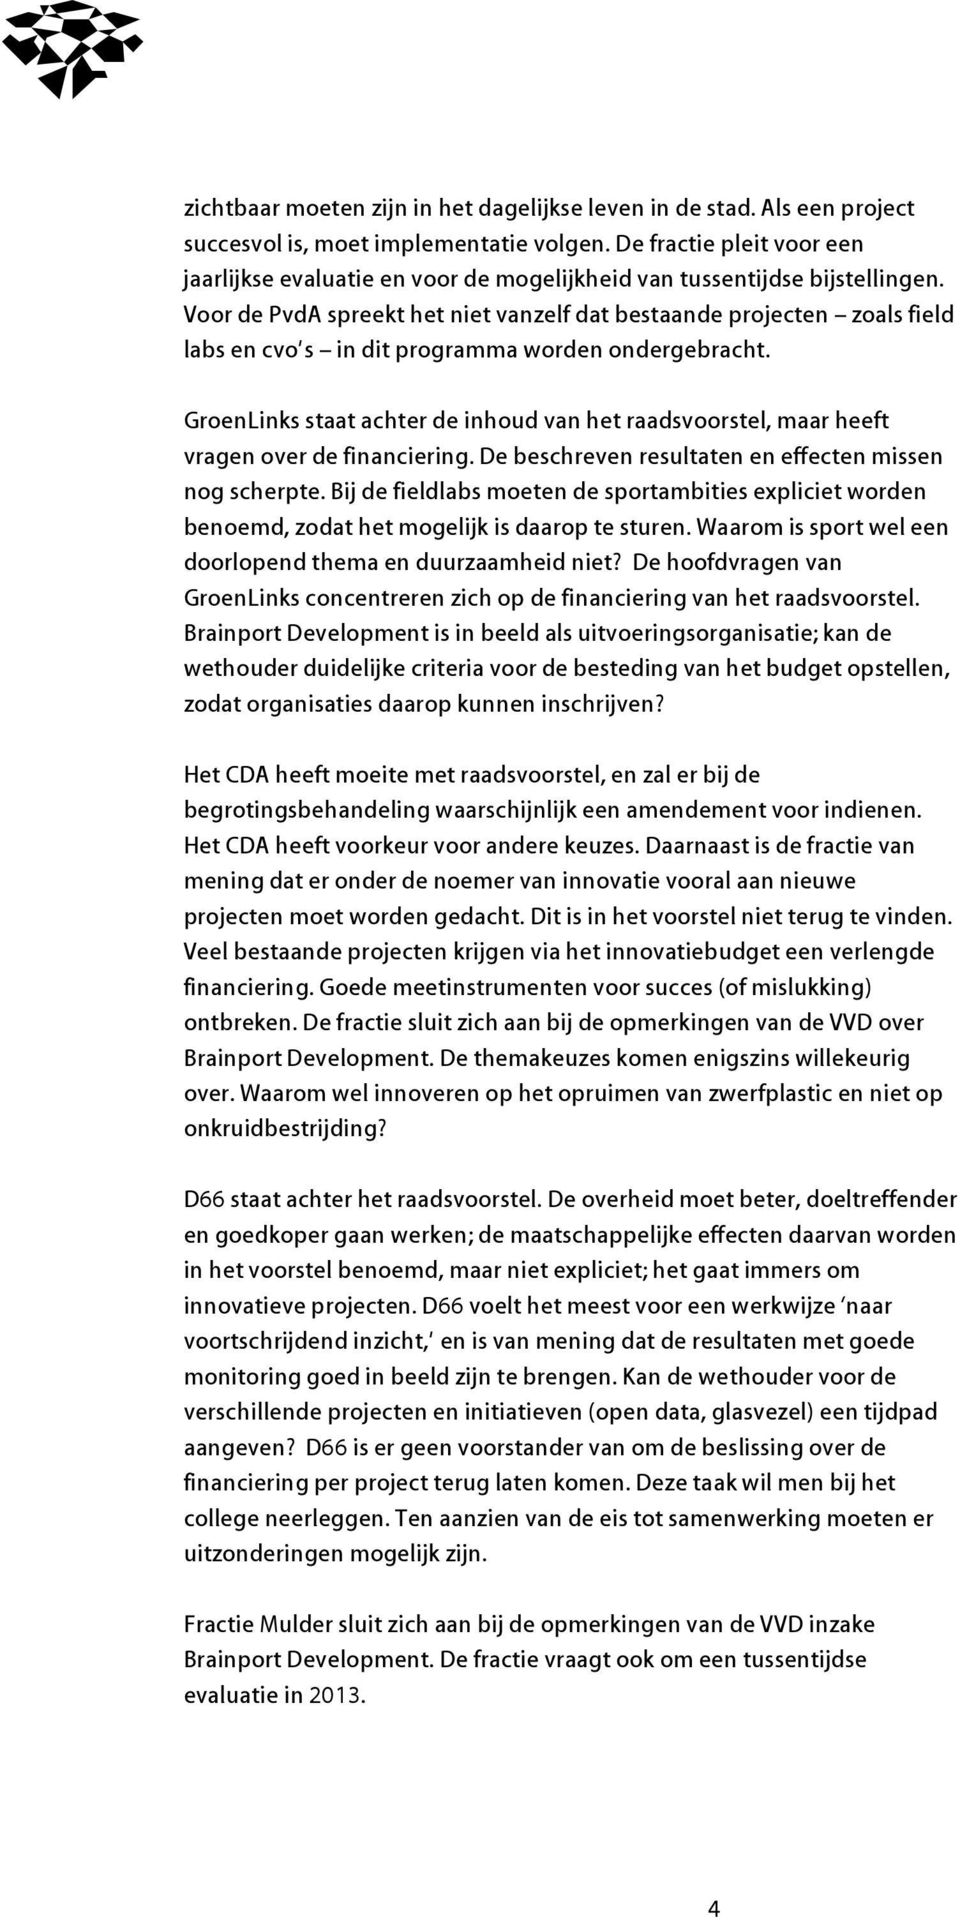 Voor de PvdA spreekt het niet vanzelf dat bestaande projecten zoals field labs en cvo s in dit programma worden ondergebracht.